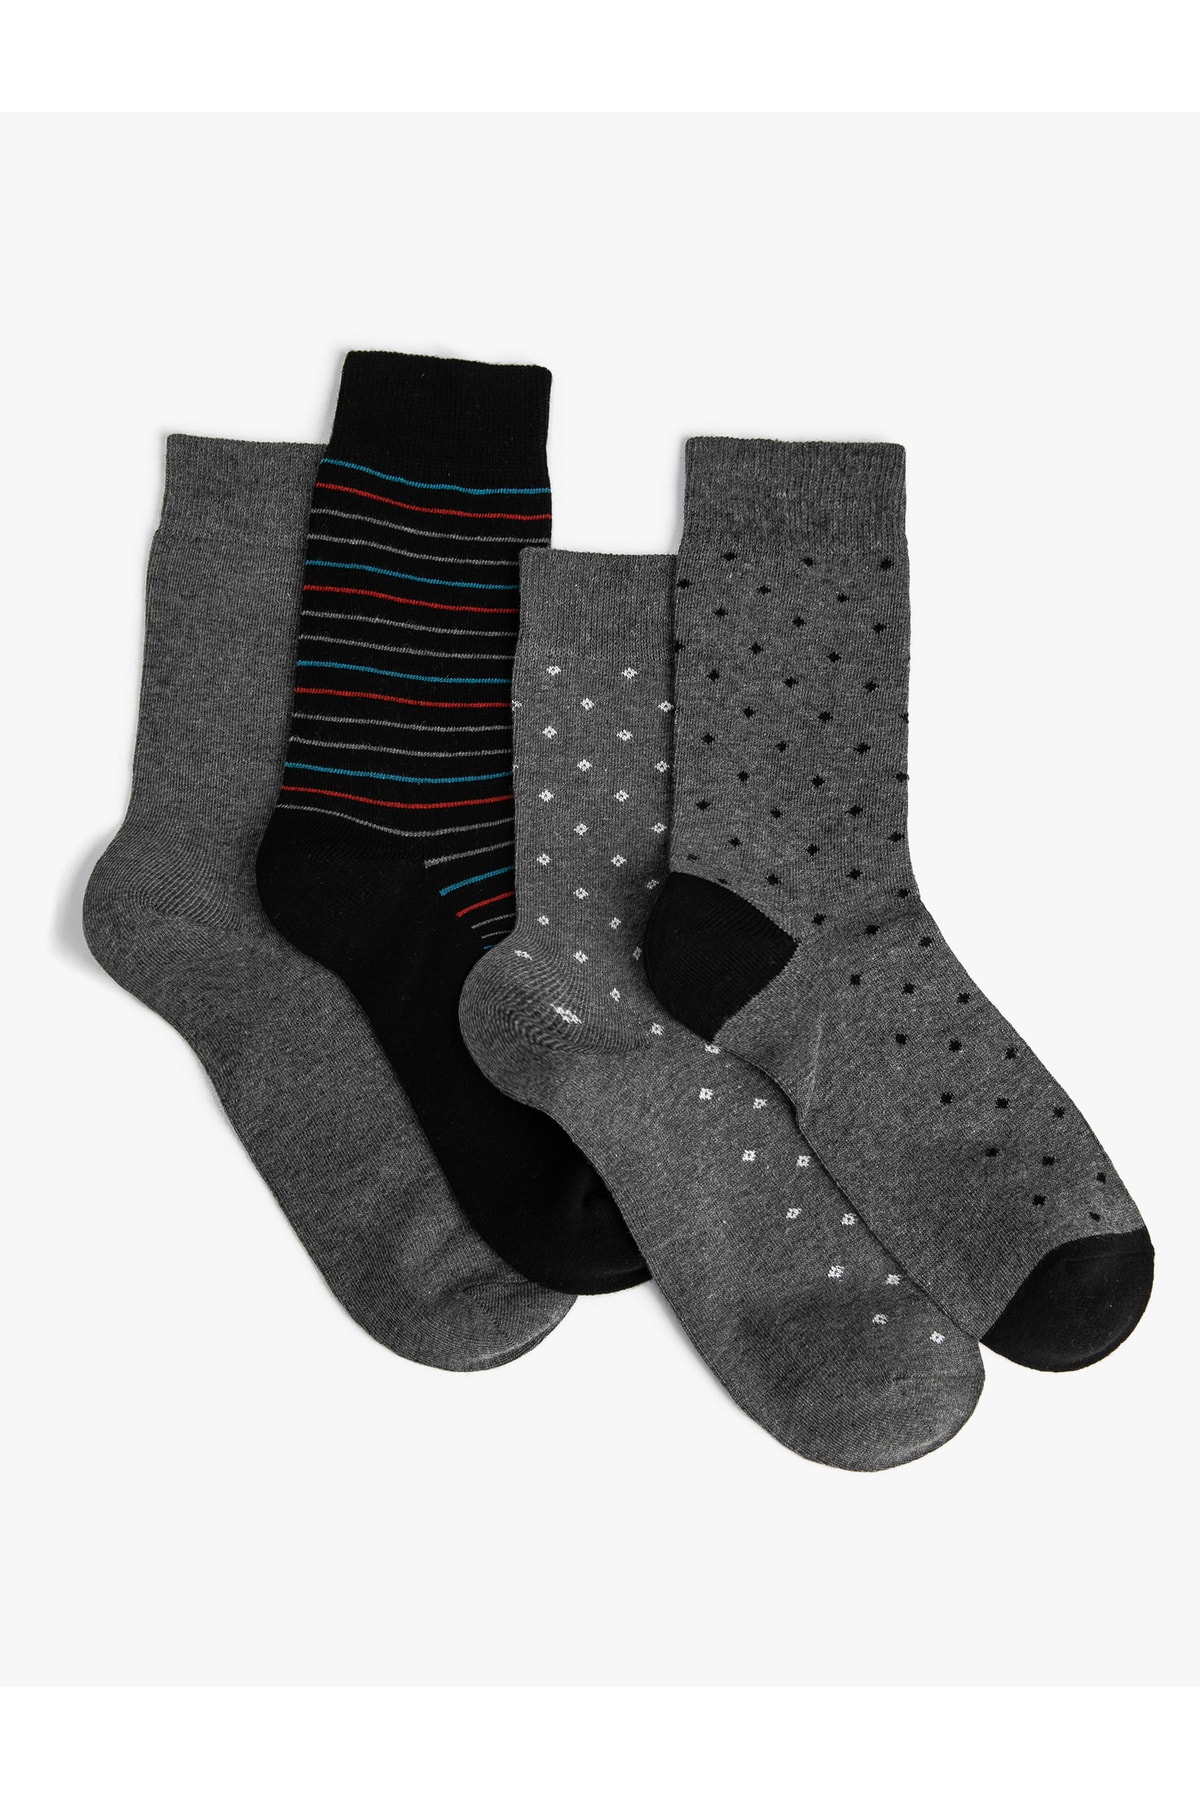 Levně Koton Set of 4 Striped Socks